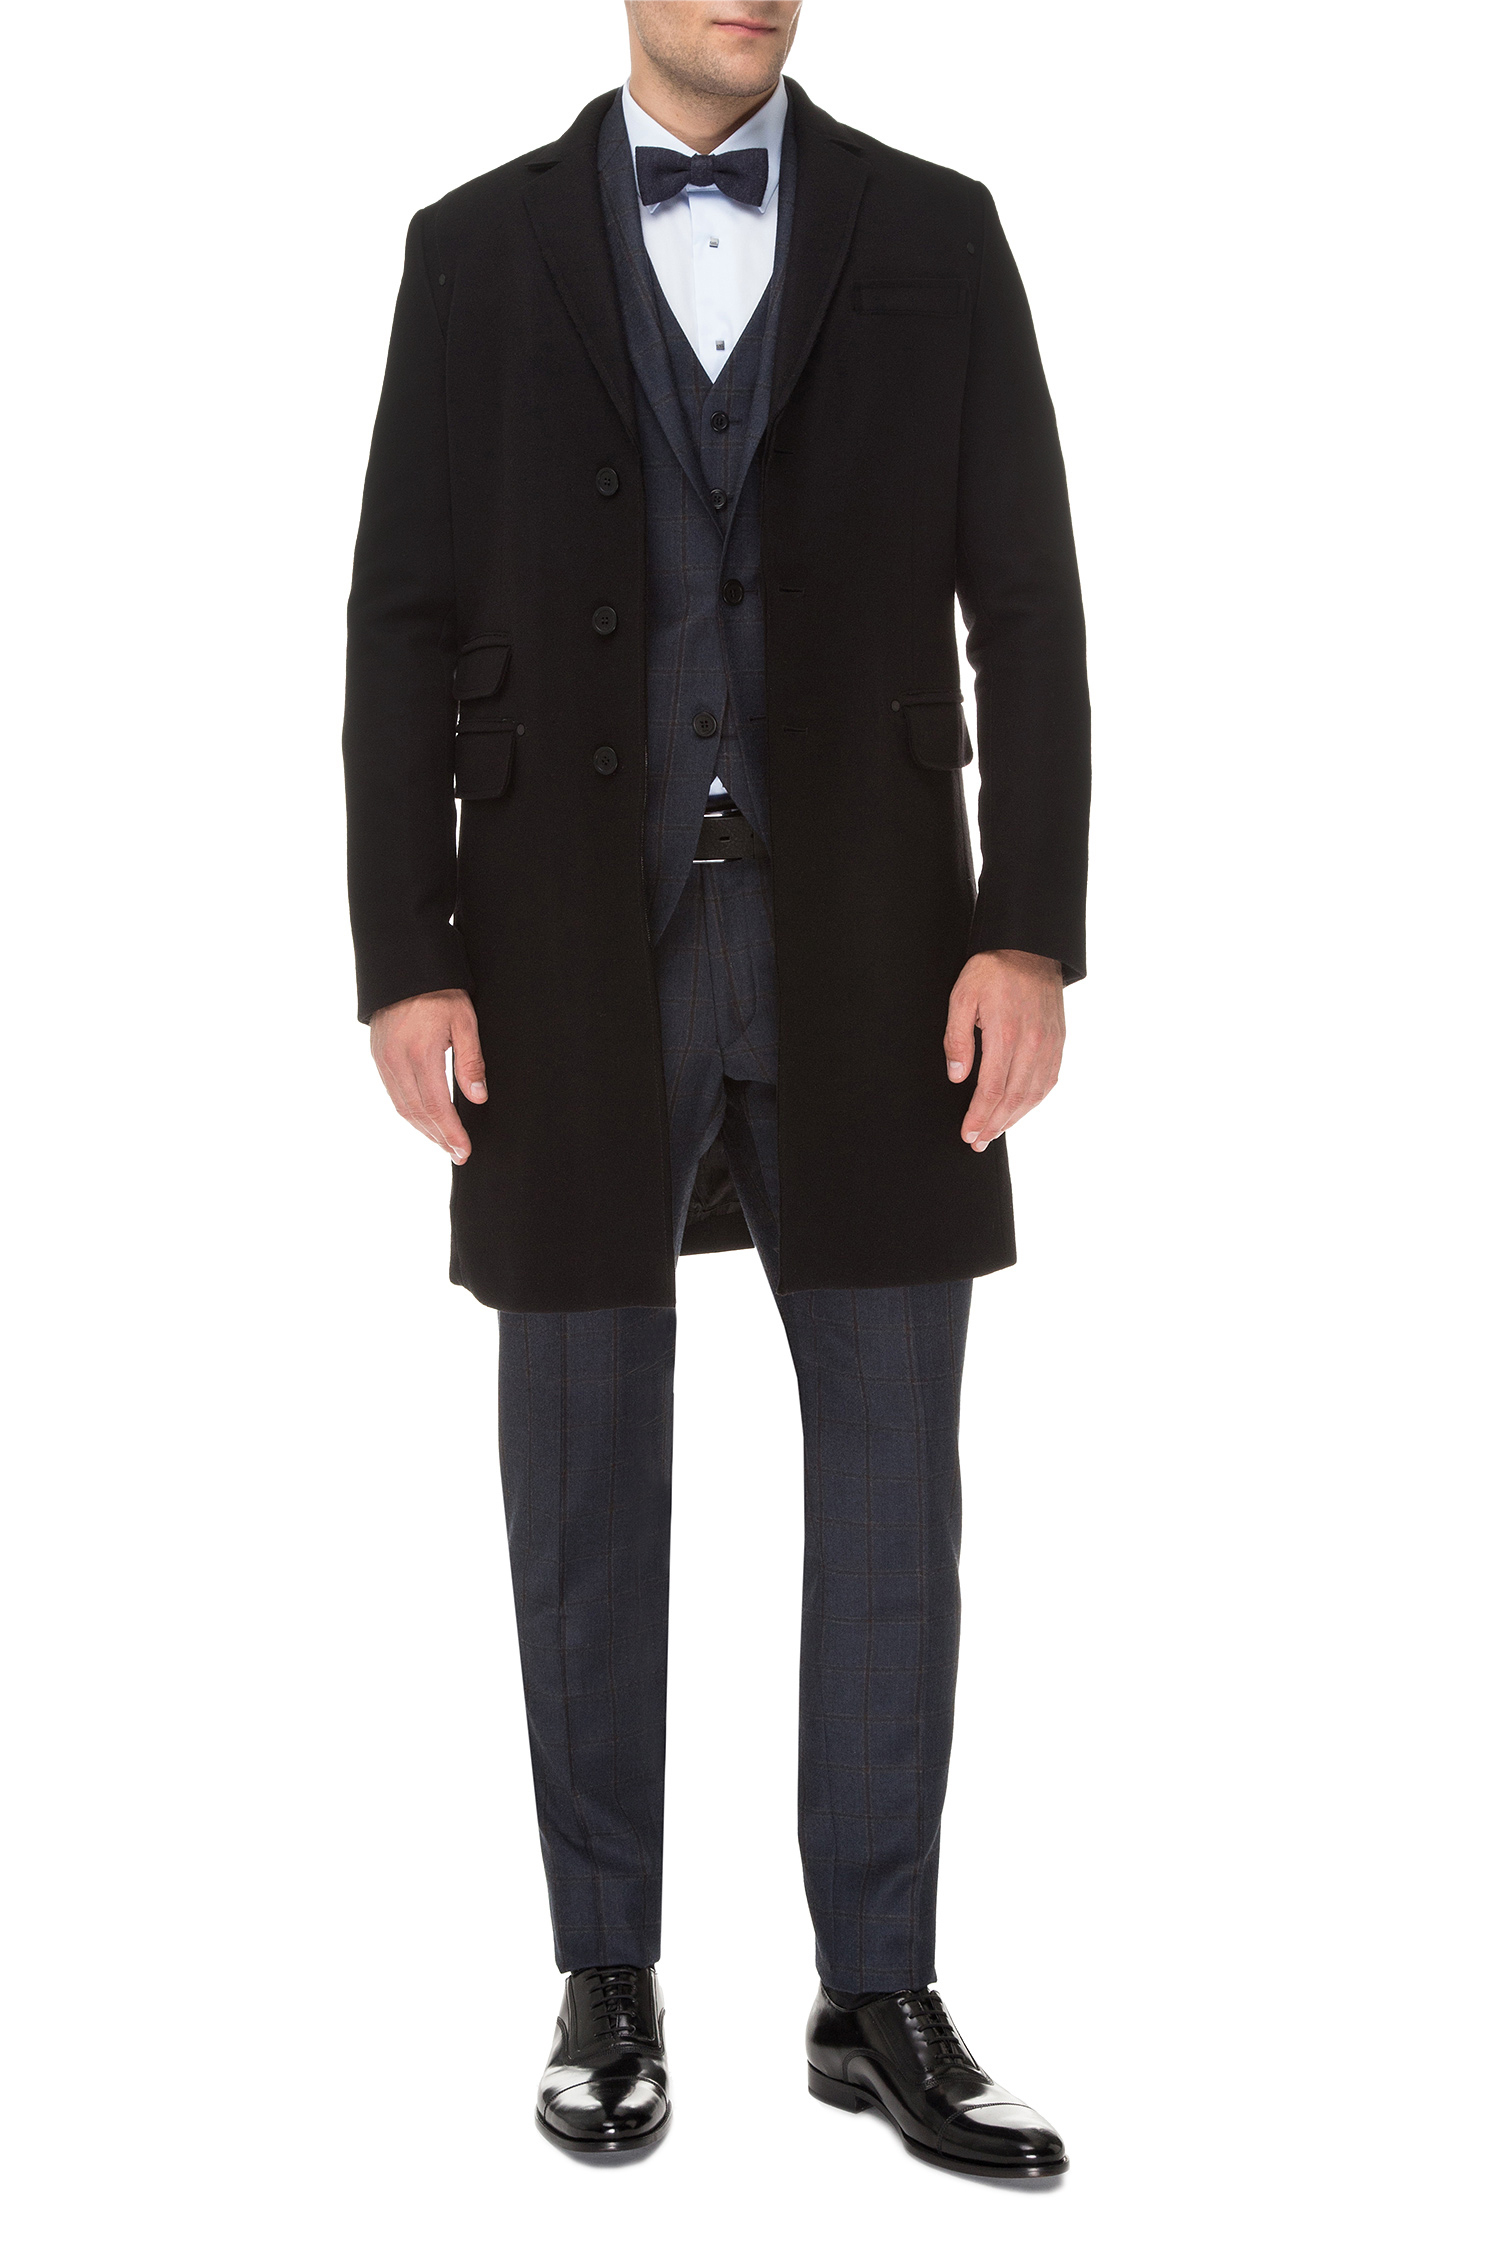 Чоловіче чорне вовняне пальто Karl Lagerfeld 582799.455502;990